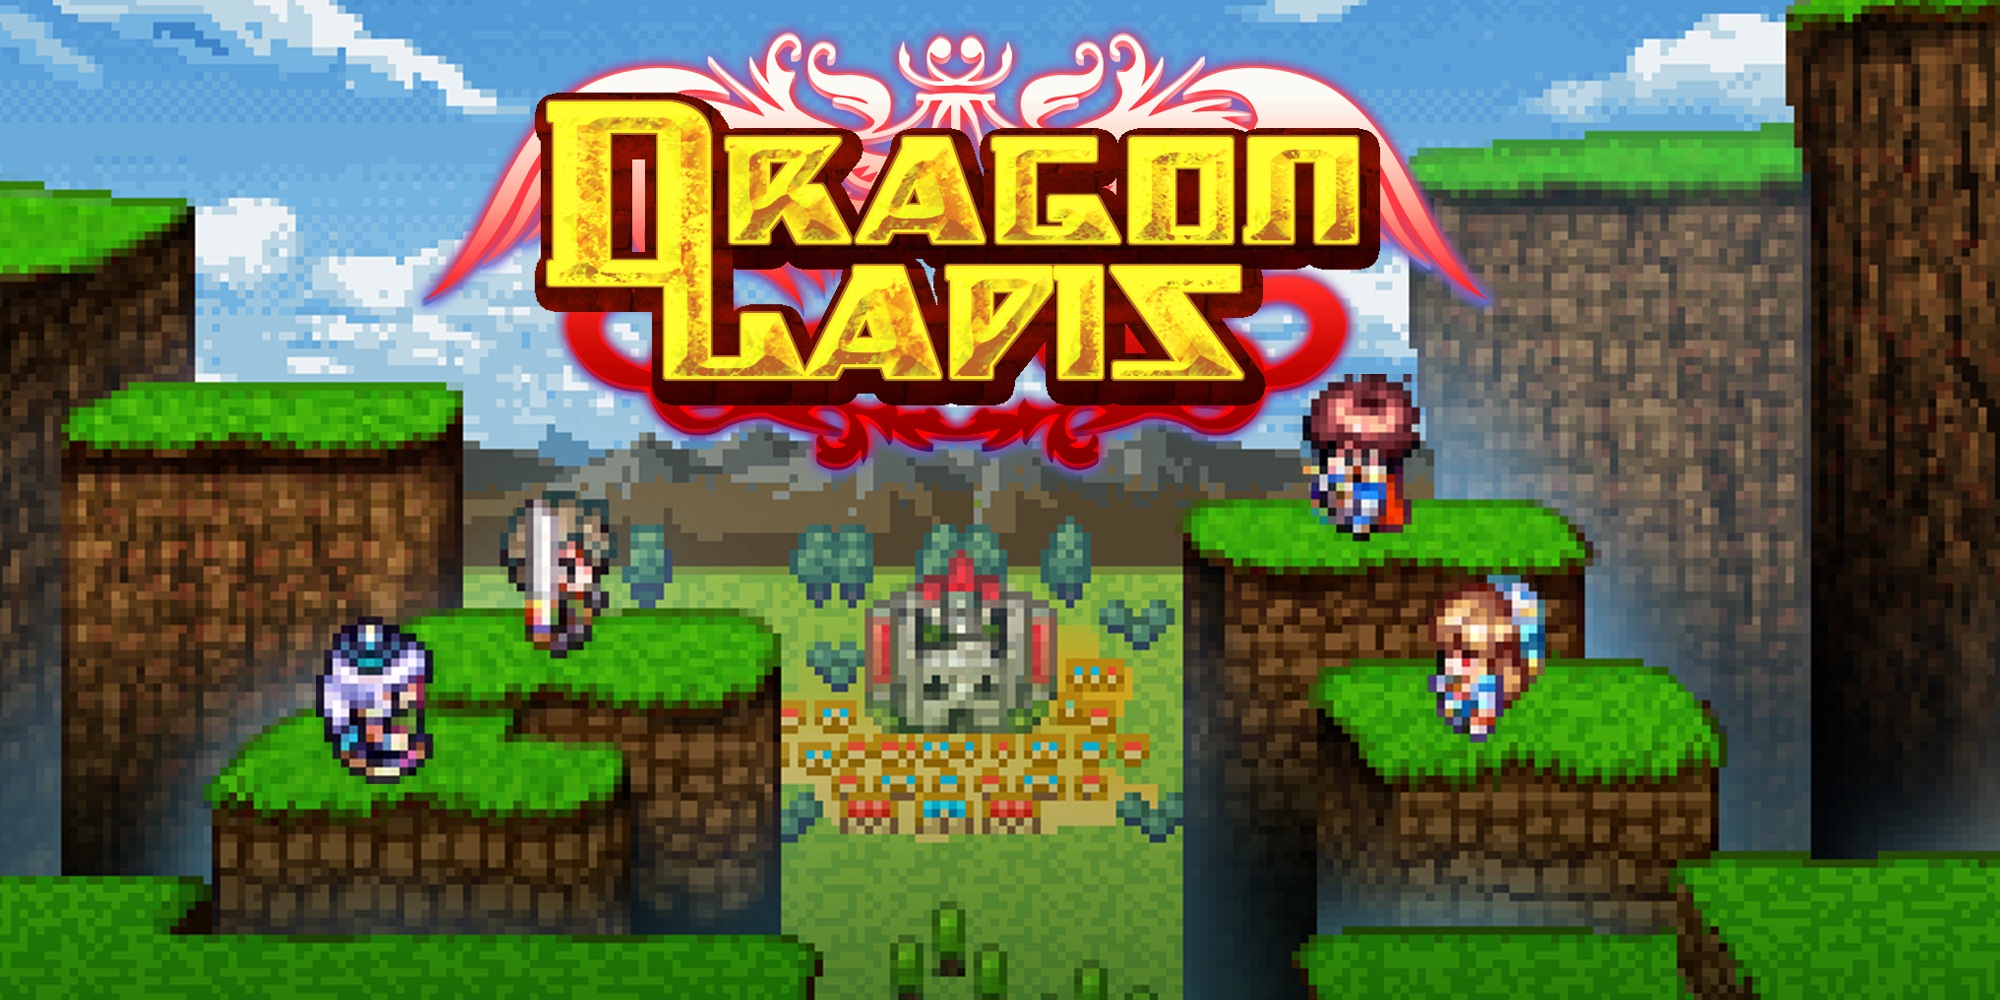 Tiny Dragon Story, Aplicações de download da Nintendo Switch, Jogos